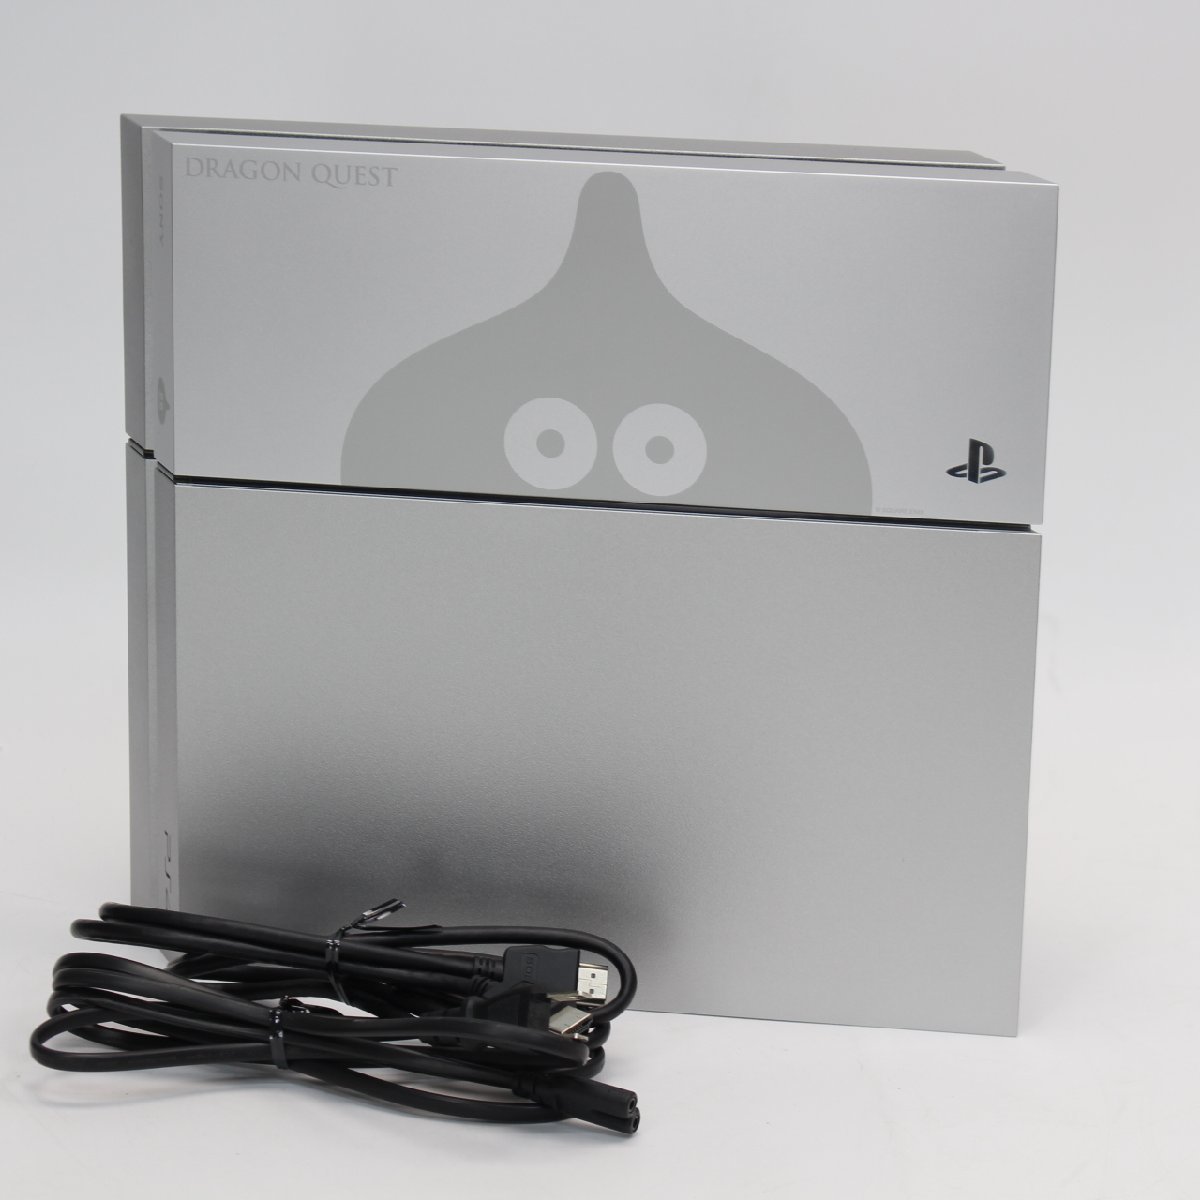 東京都渋谷区にて ソニー PlayStation4 ドラゴンクエスト メタルスライム エディション MODEL:CUH-1100A 500GB  を出張買取させて頂きました。